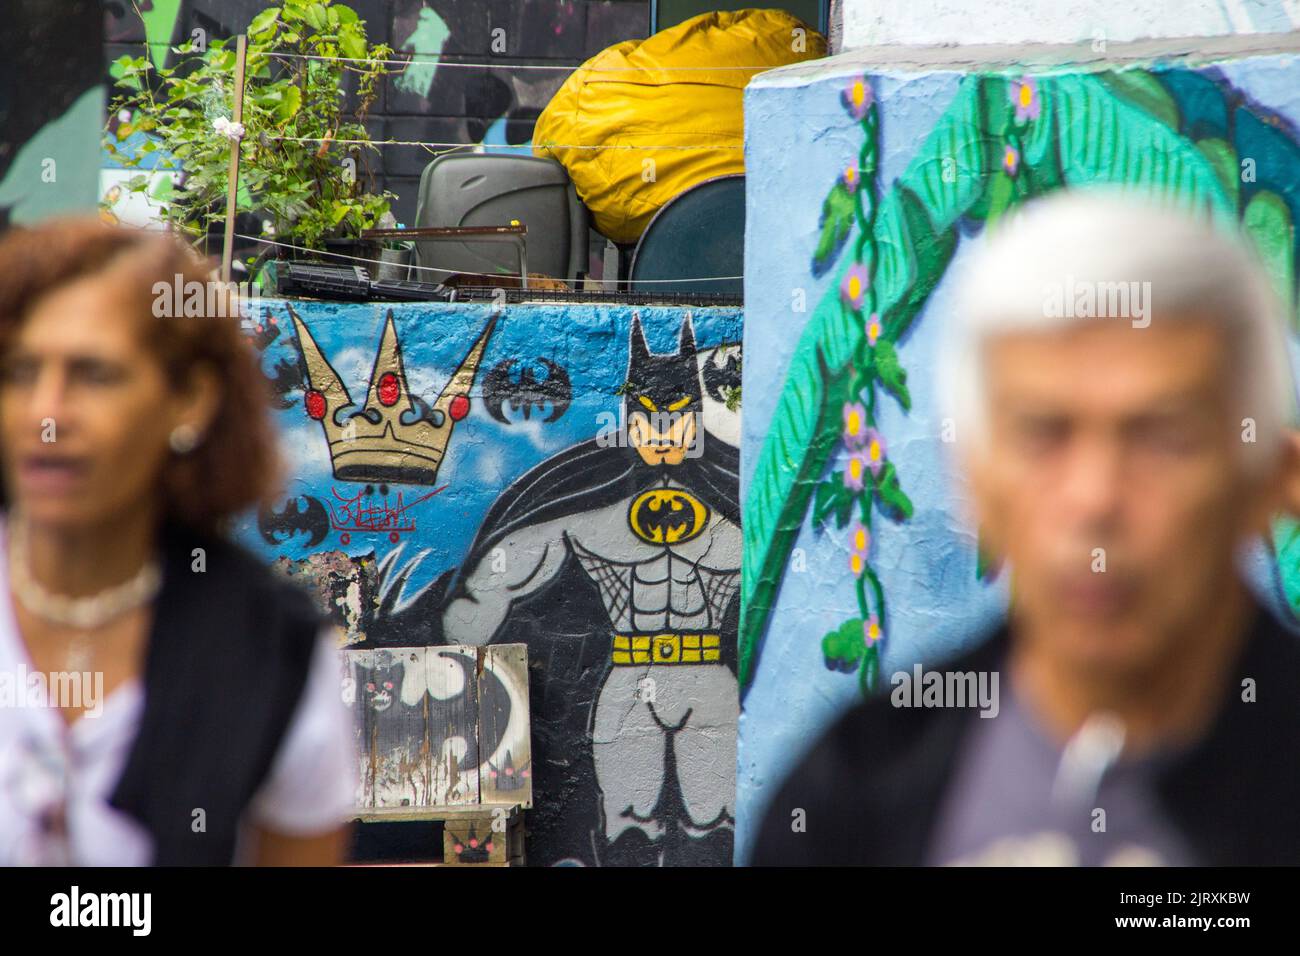 Batman's Alley, Vila Madalena, São Paulo Brésil - 16 février 2019 : Batman's Alley est un plat de graffiti situé à Vila Madalena, une ne bohème Banque D'Images